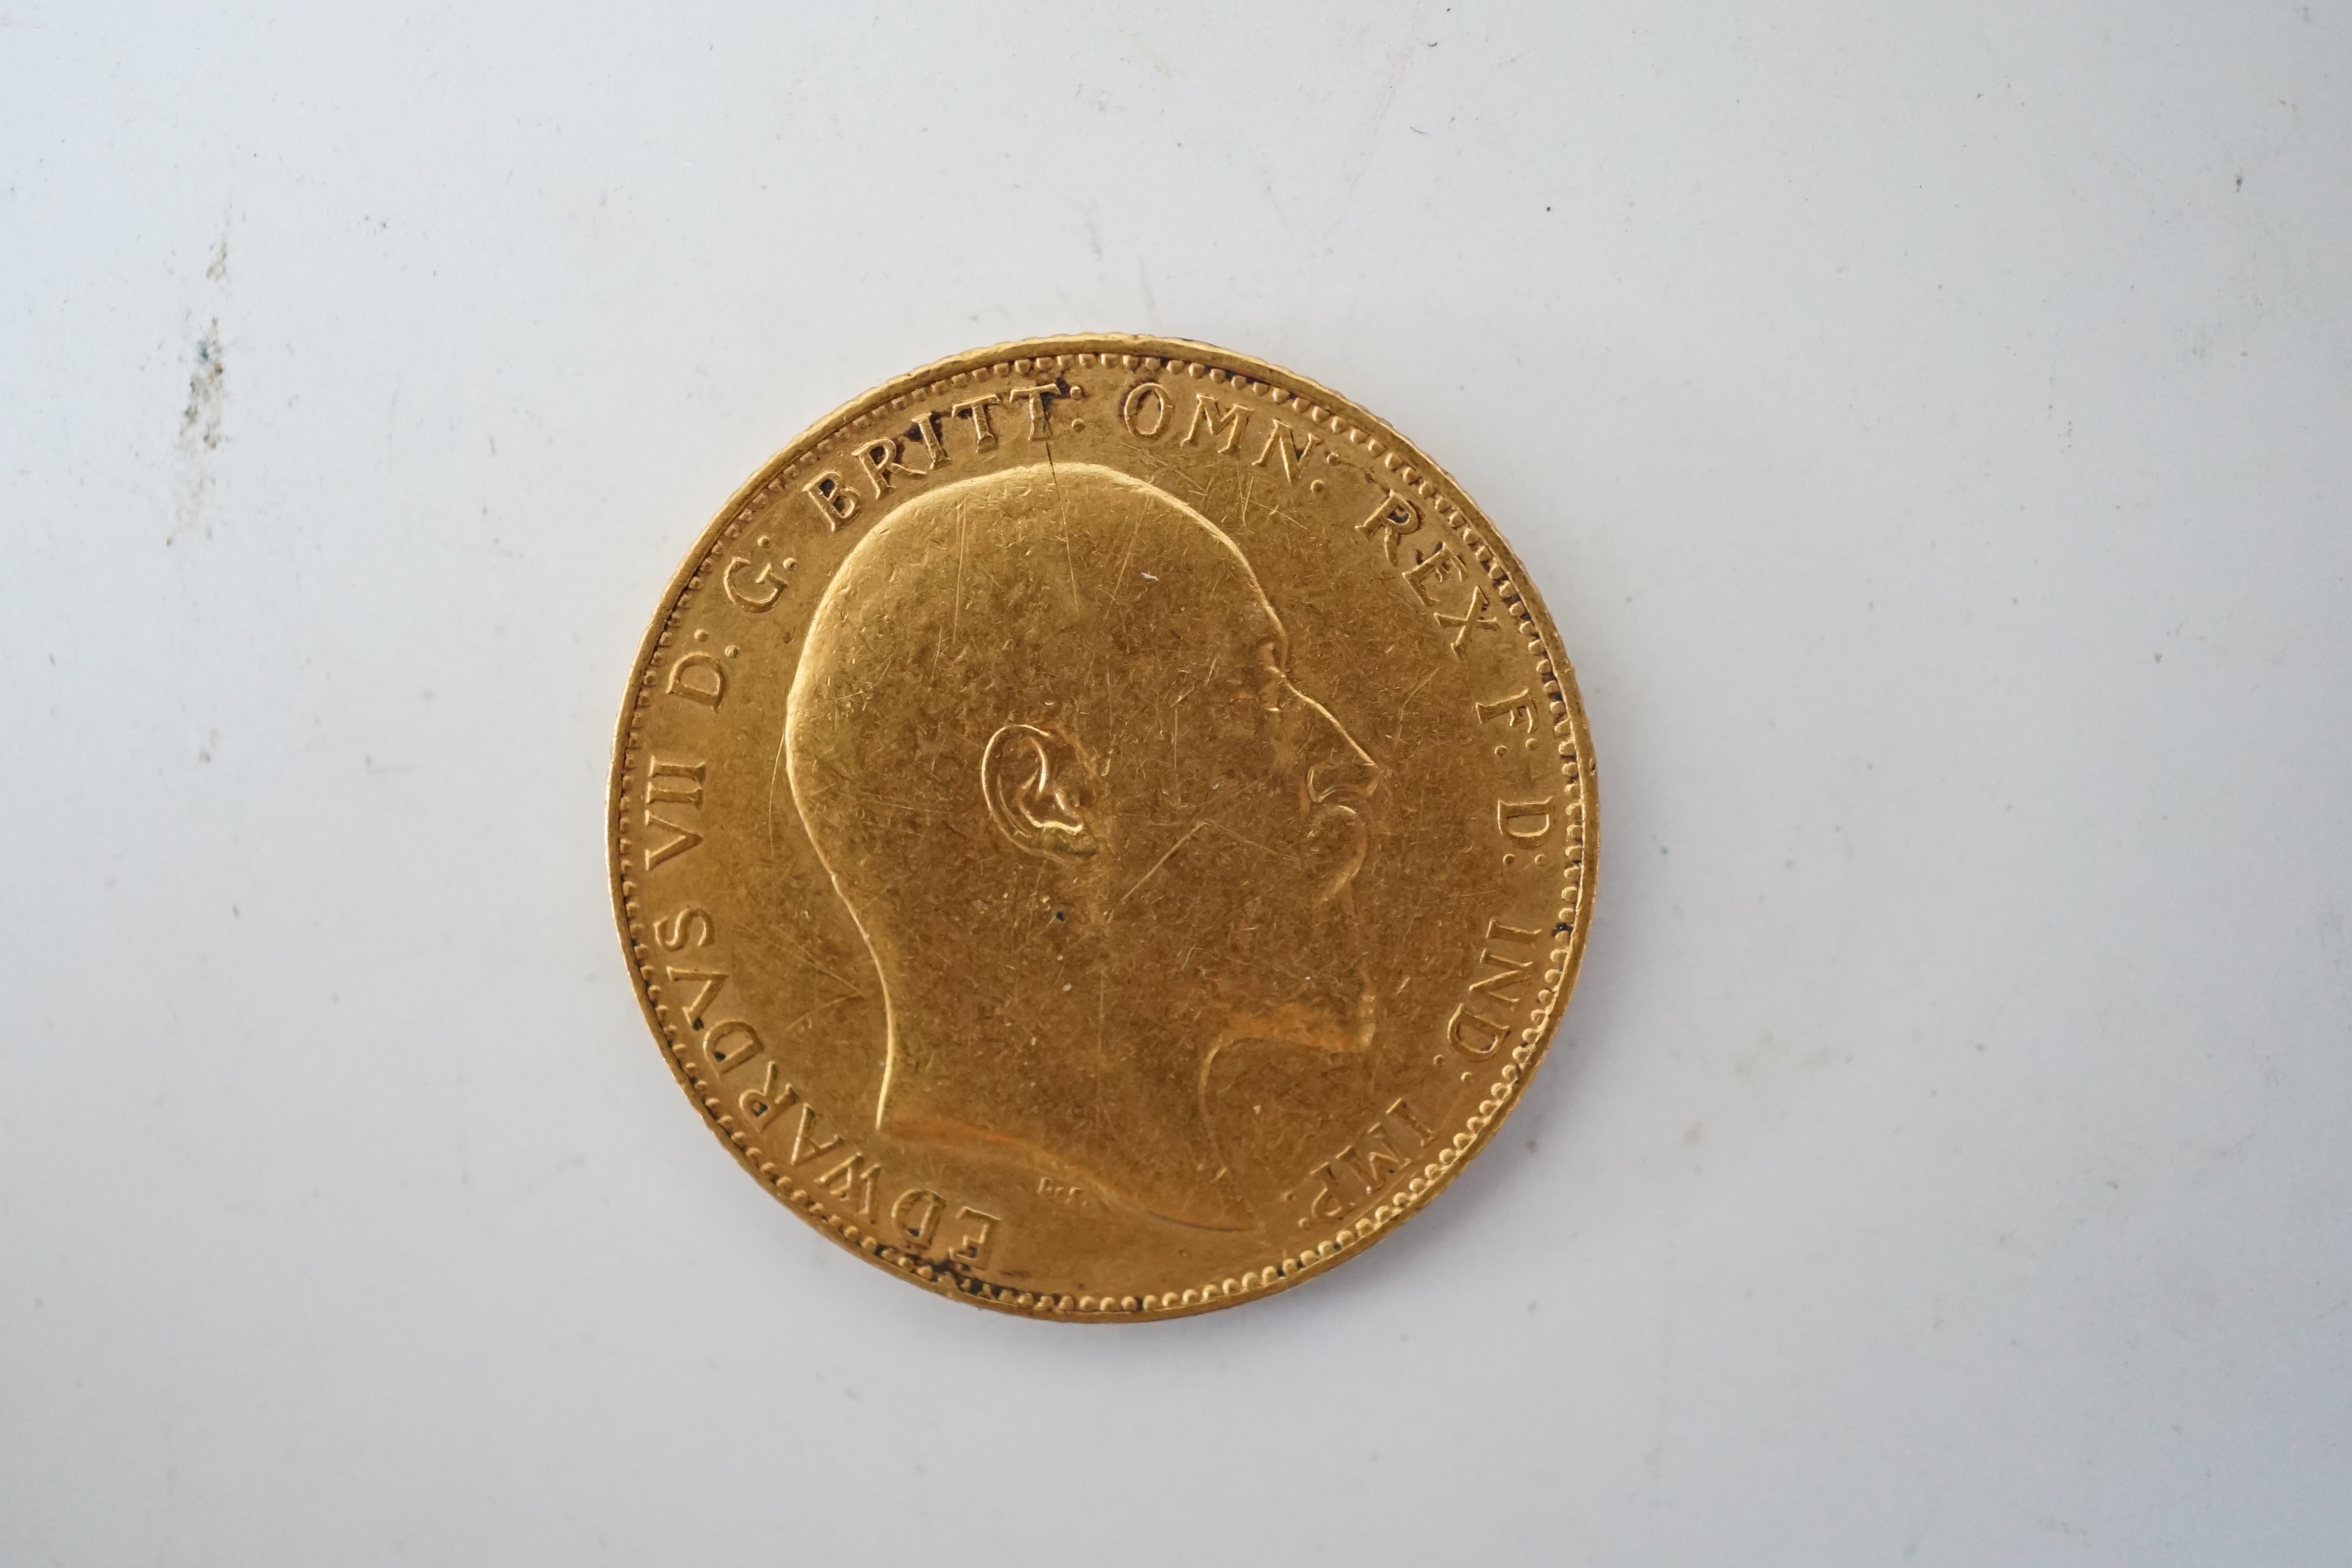 British gold coins, Edward VII sovereign, 1910 (S3969), VF